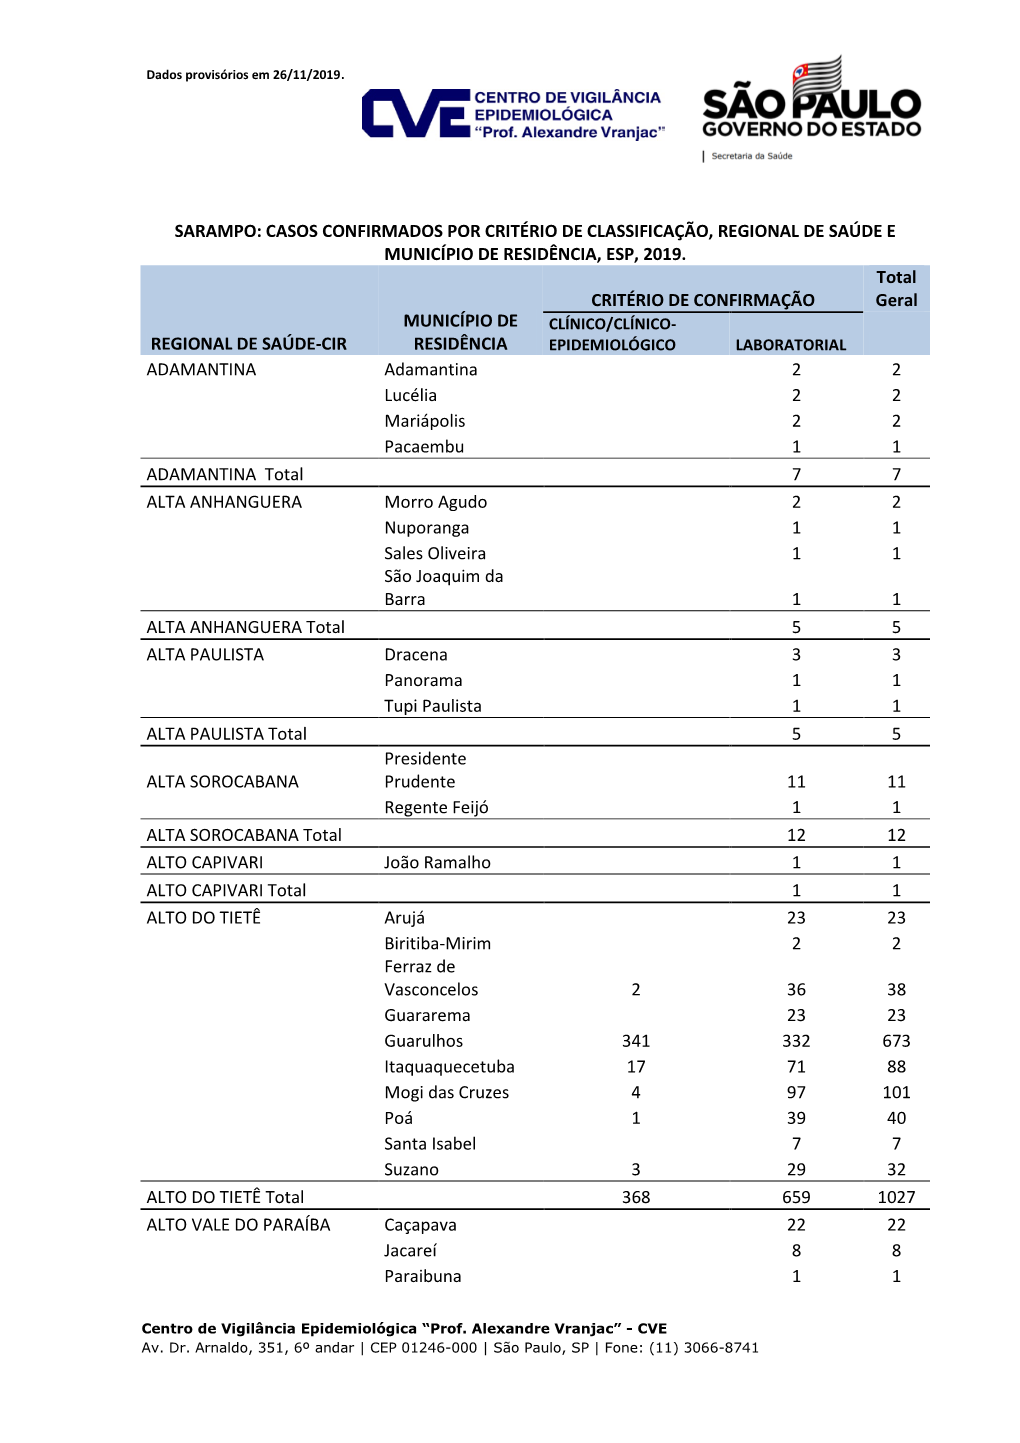 Sarampo: Casos Confirmados Por Critério De Classificação, Regional De Saúde E Município De Residência, Esp, 2019